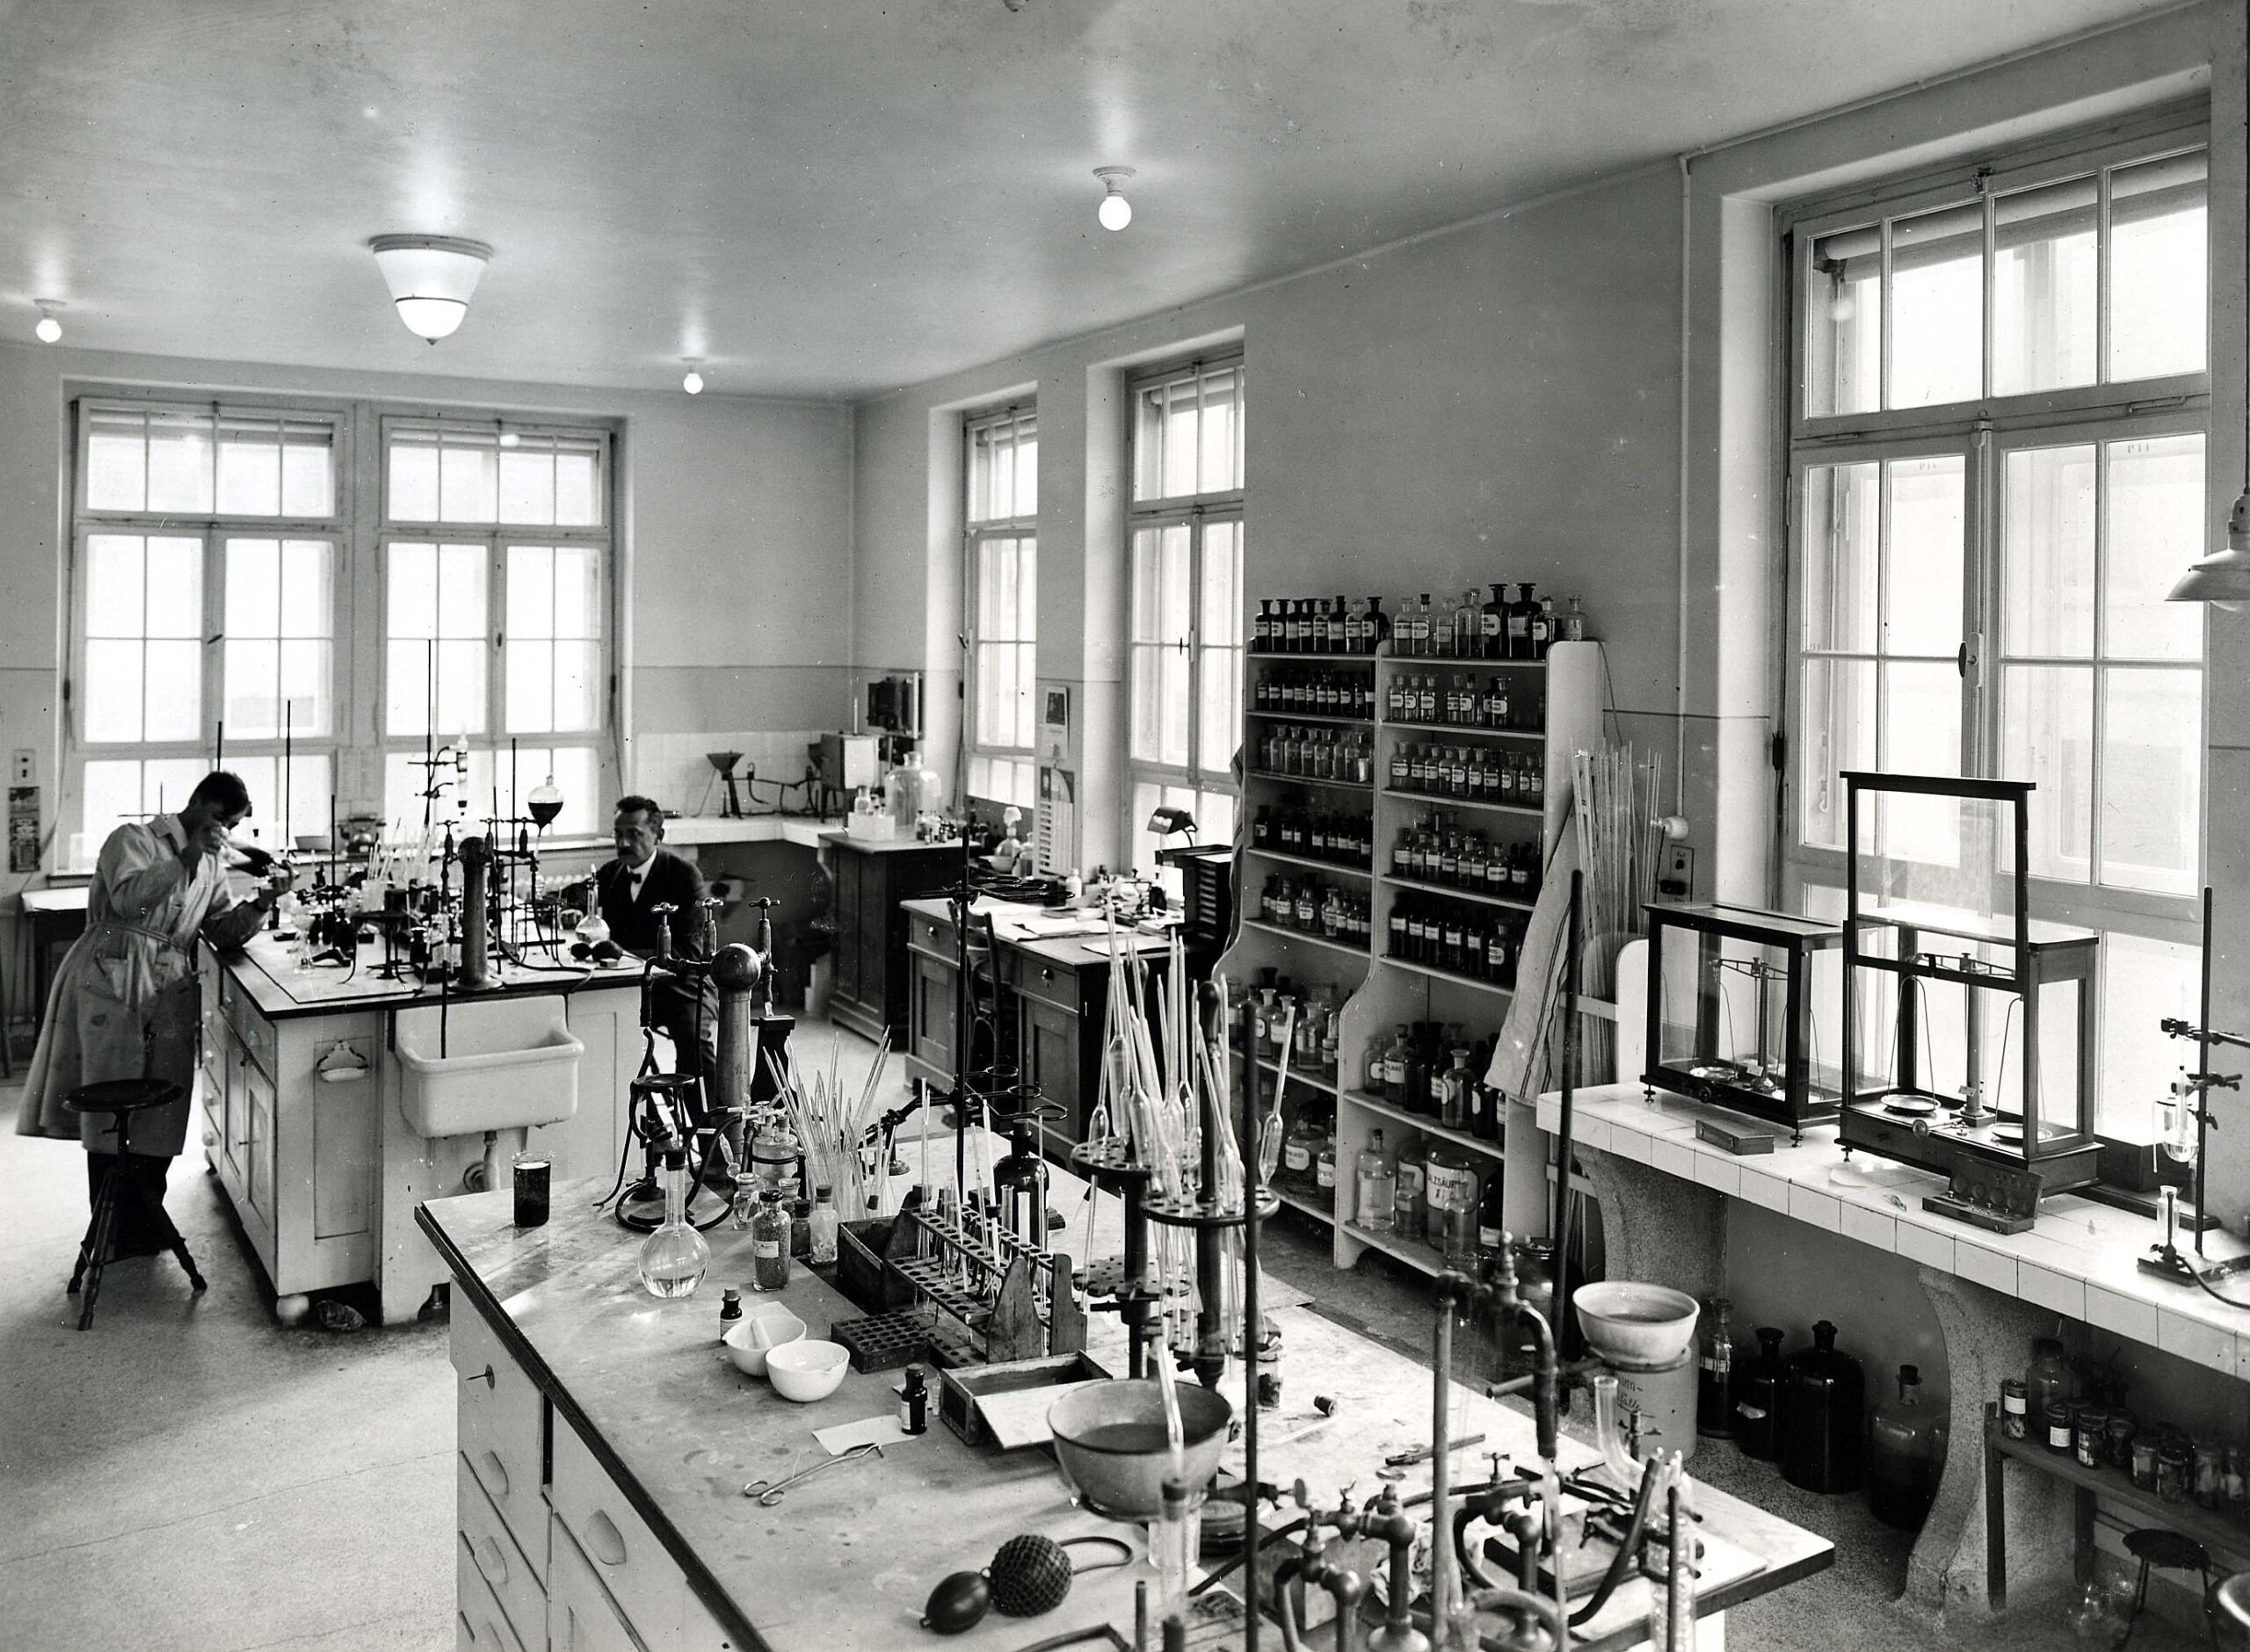 Ein Labor der 20er Jahre. Zwei Menschen hantieren mit Reagenzgläsern in einem Raum mit vielen Fenstern. Dazwischen stehen Regale mit Glasflaschen und Waagschalen.